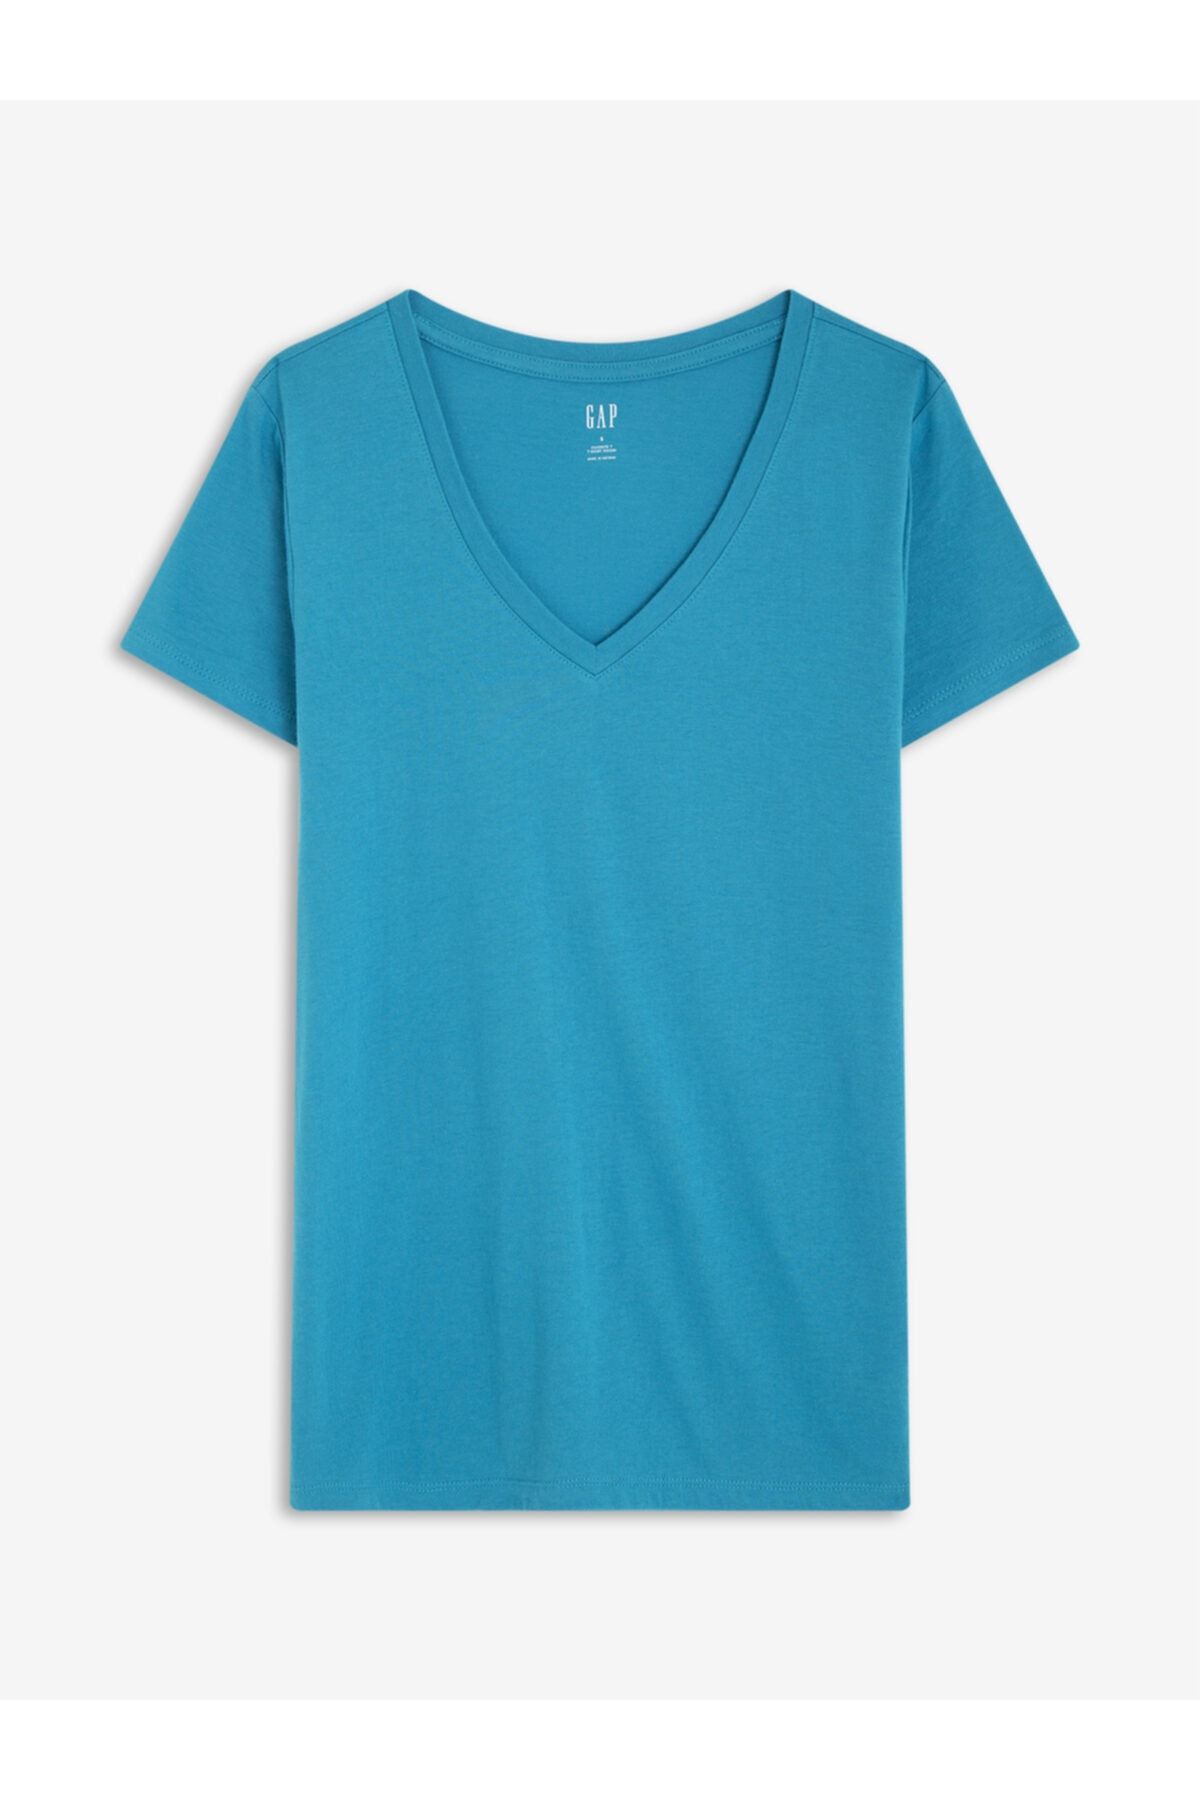 GAP Kadın Mavi Favorite V Yaka T-shirt